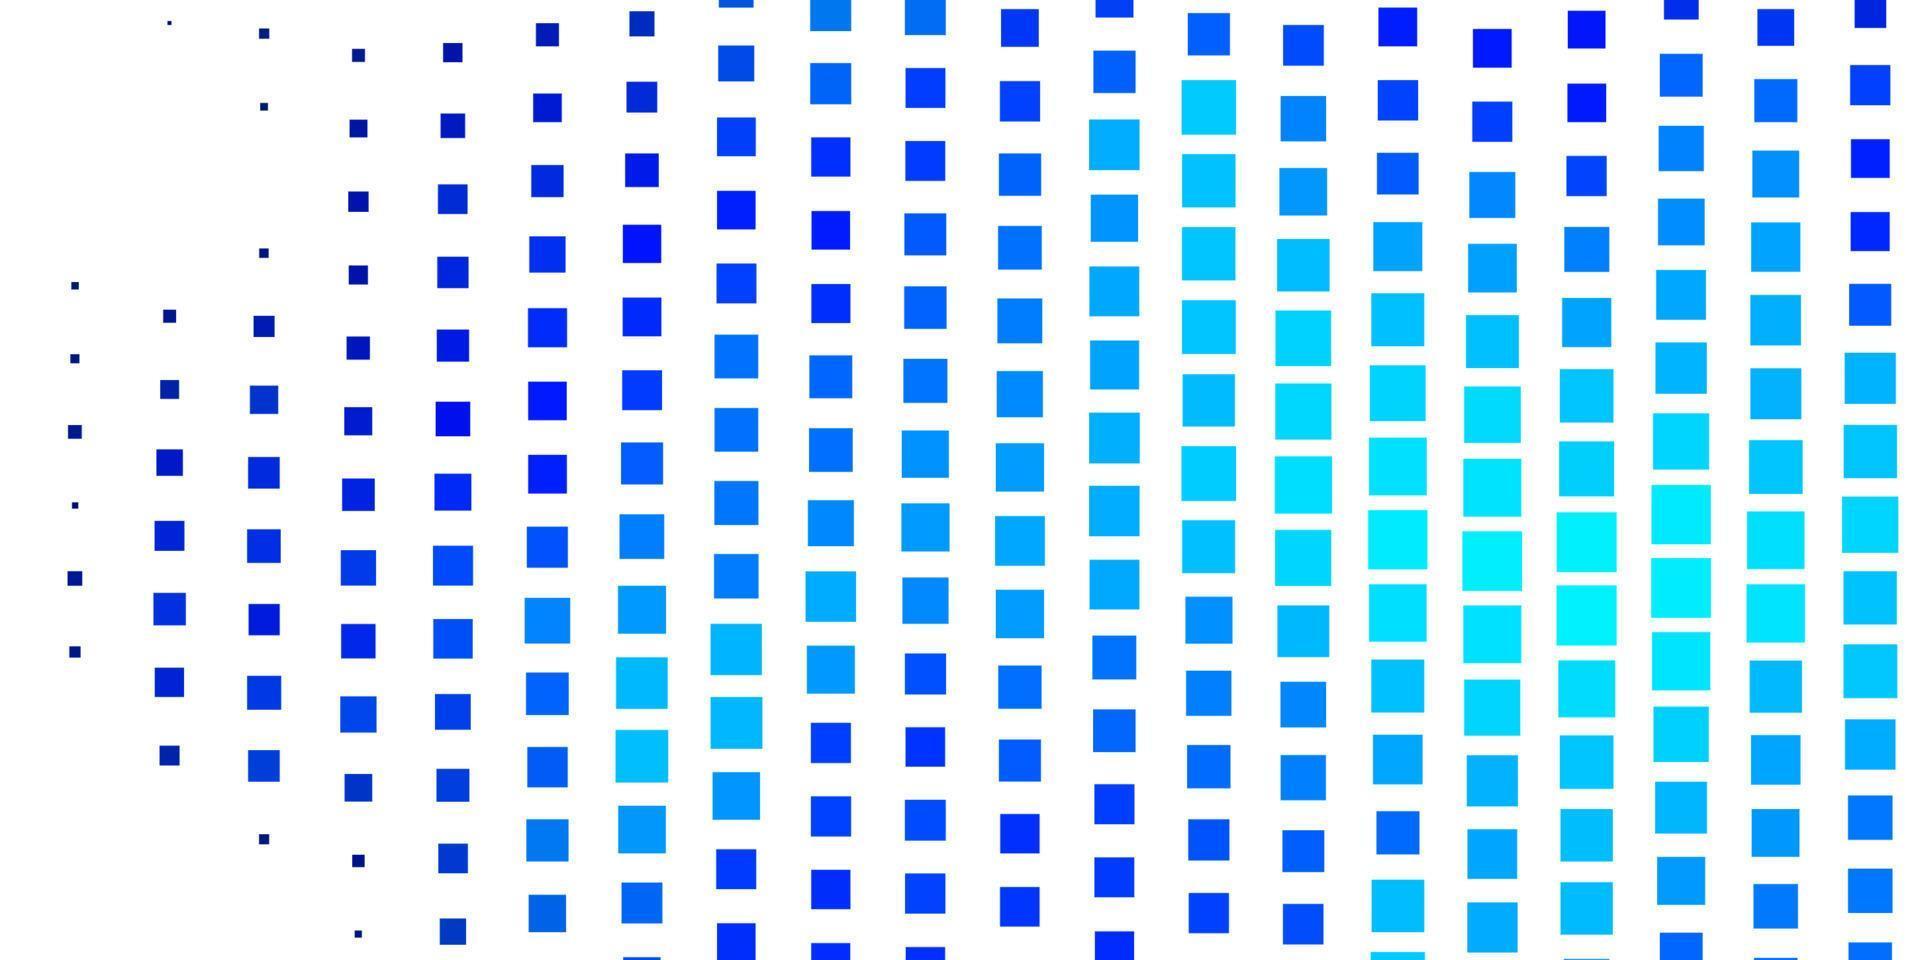 donkerblauwe vectorachtergrond met rechthoeken. vector